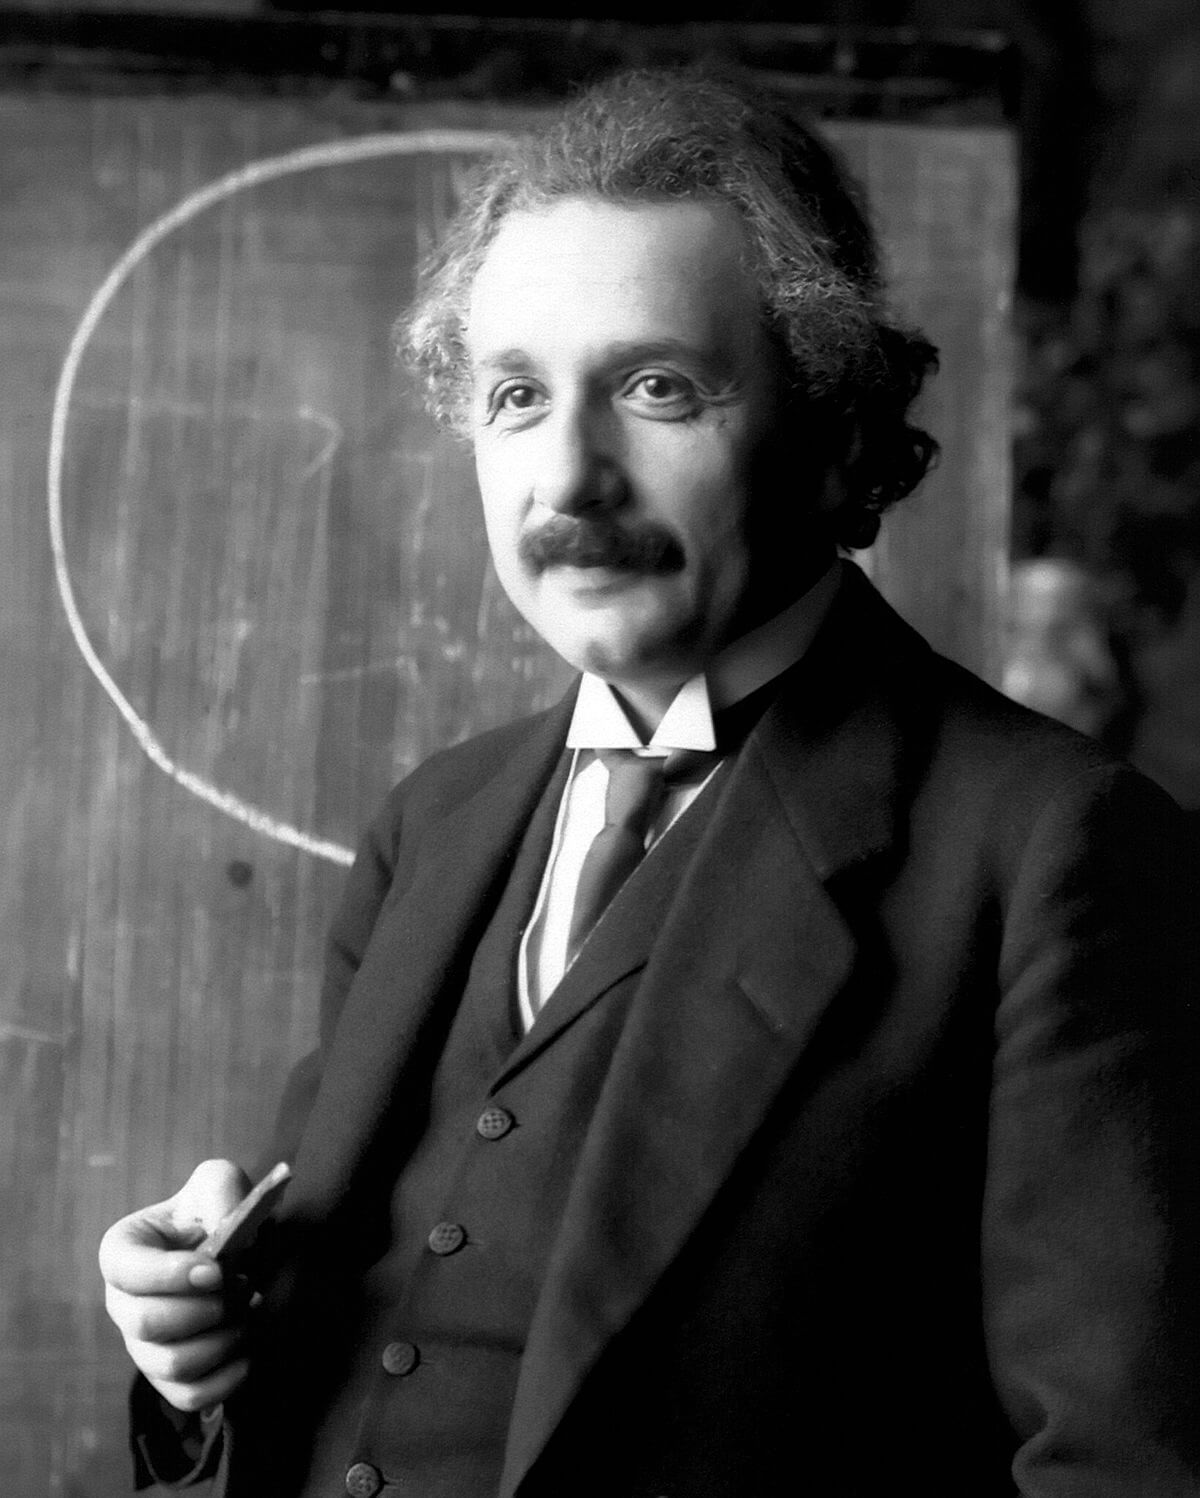 Albert Einstein Là một nhà vật lý, nổi tiếng nhất với Thuyết tương đối và Phương trình E = MC^2